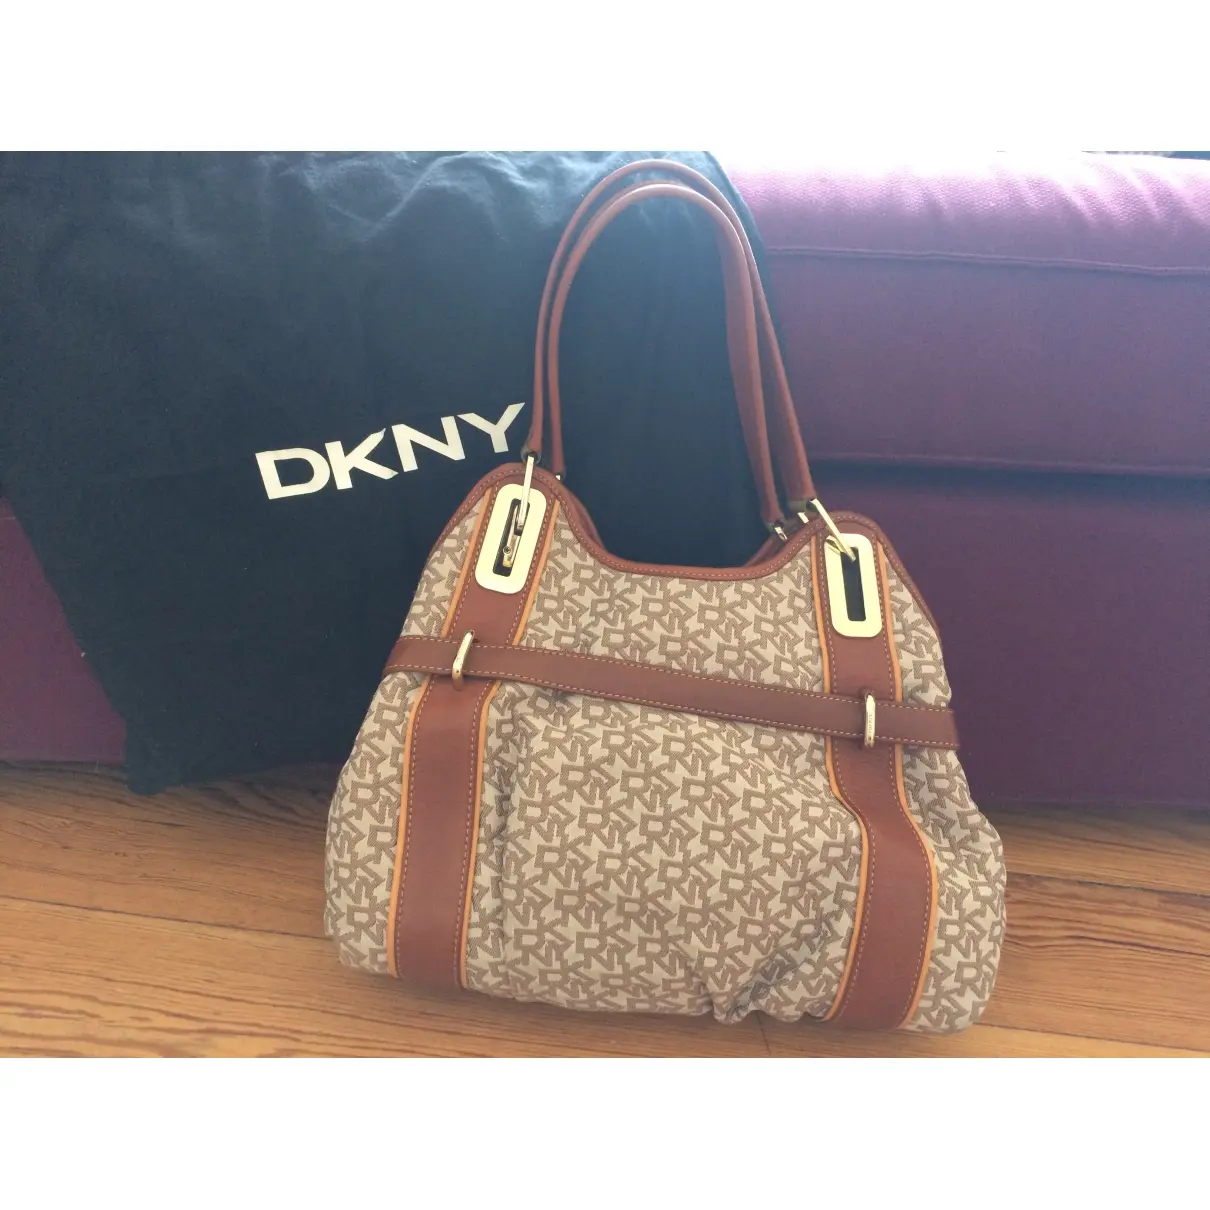 Dkny Cloth handbag for sale